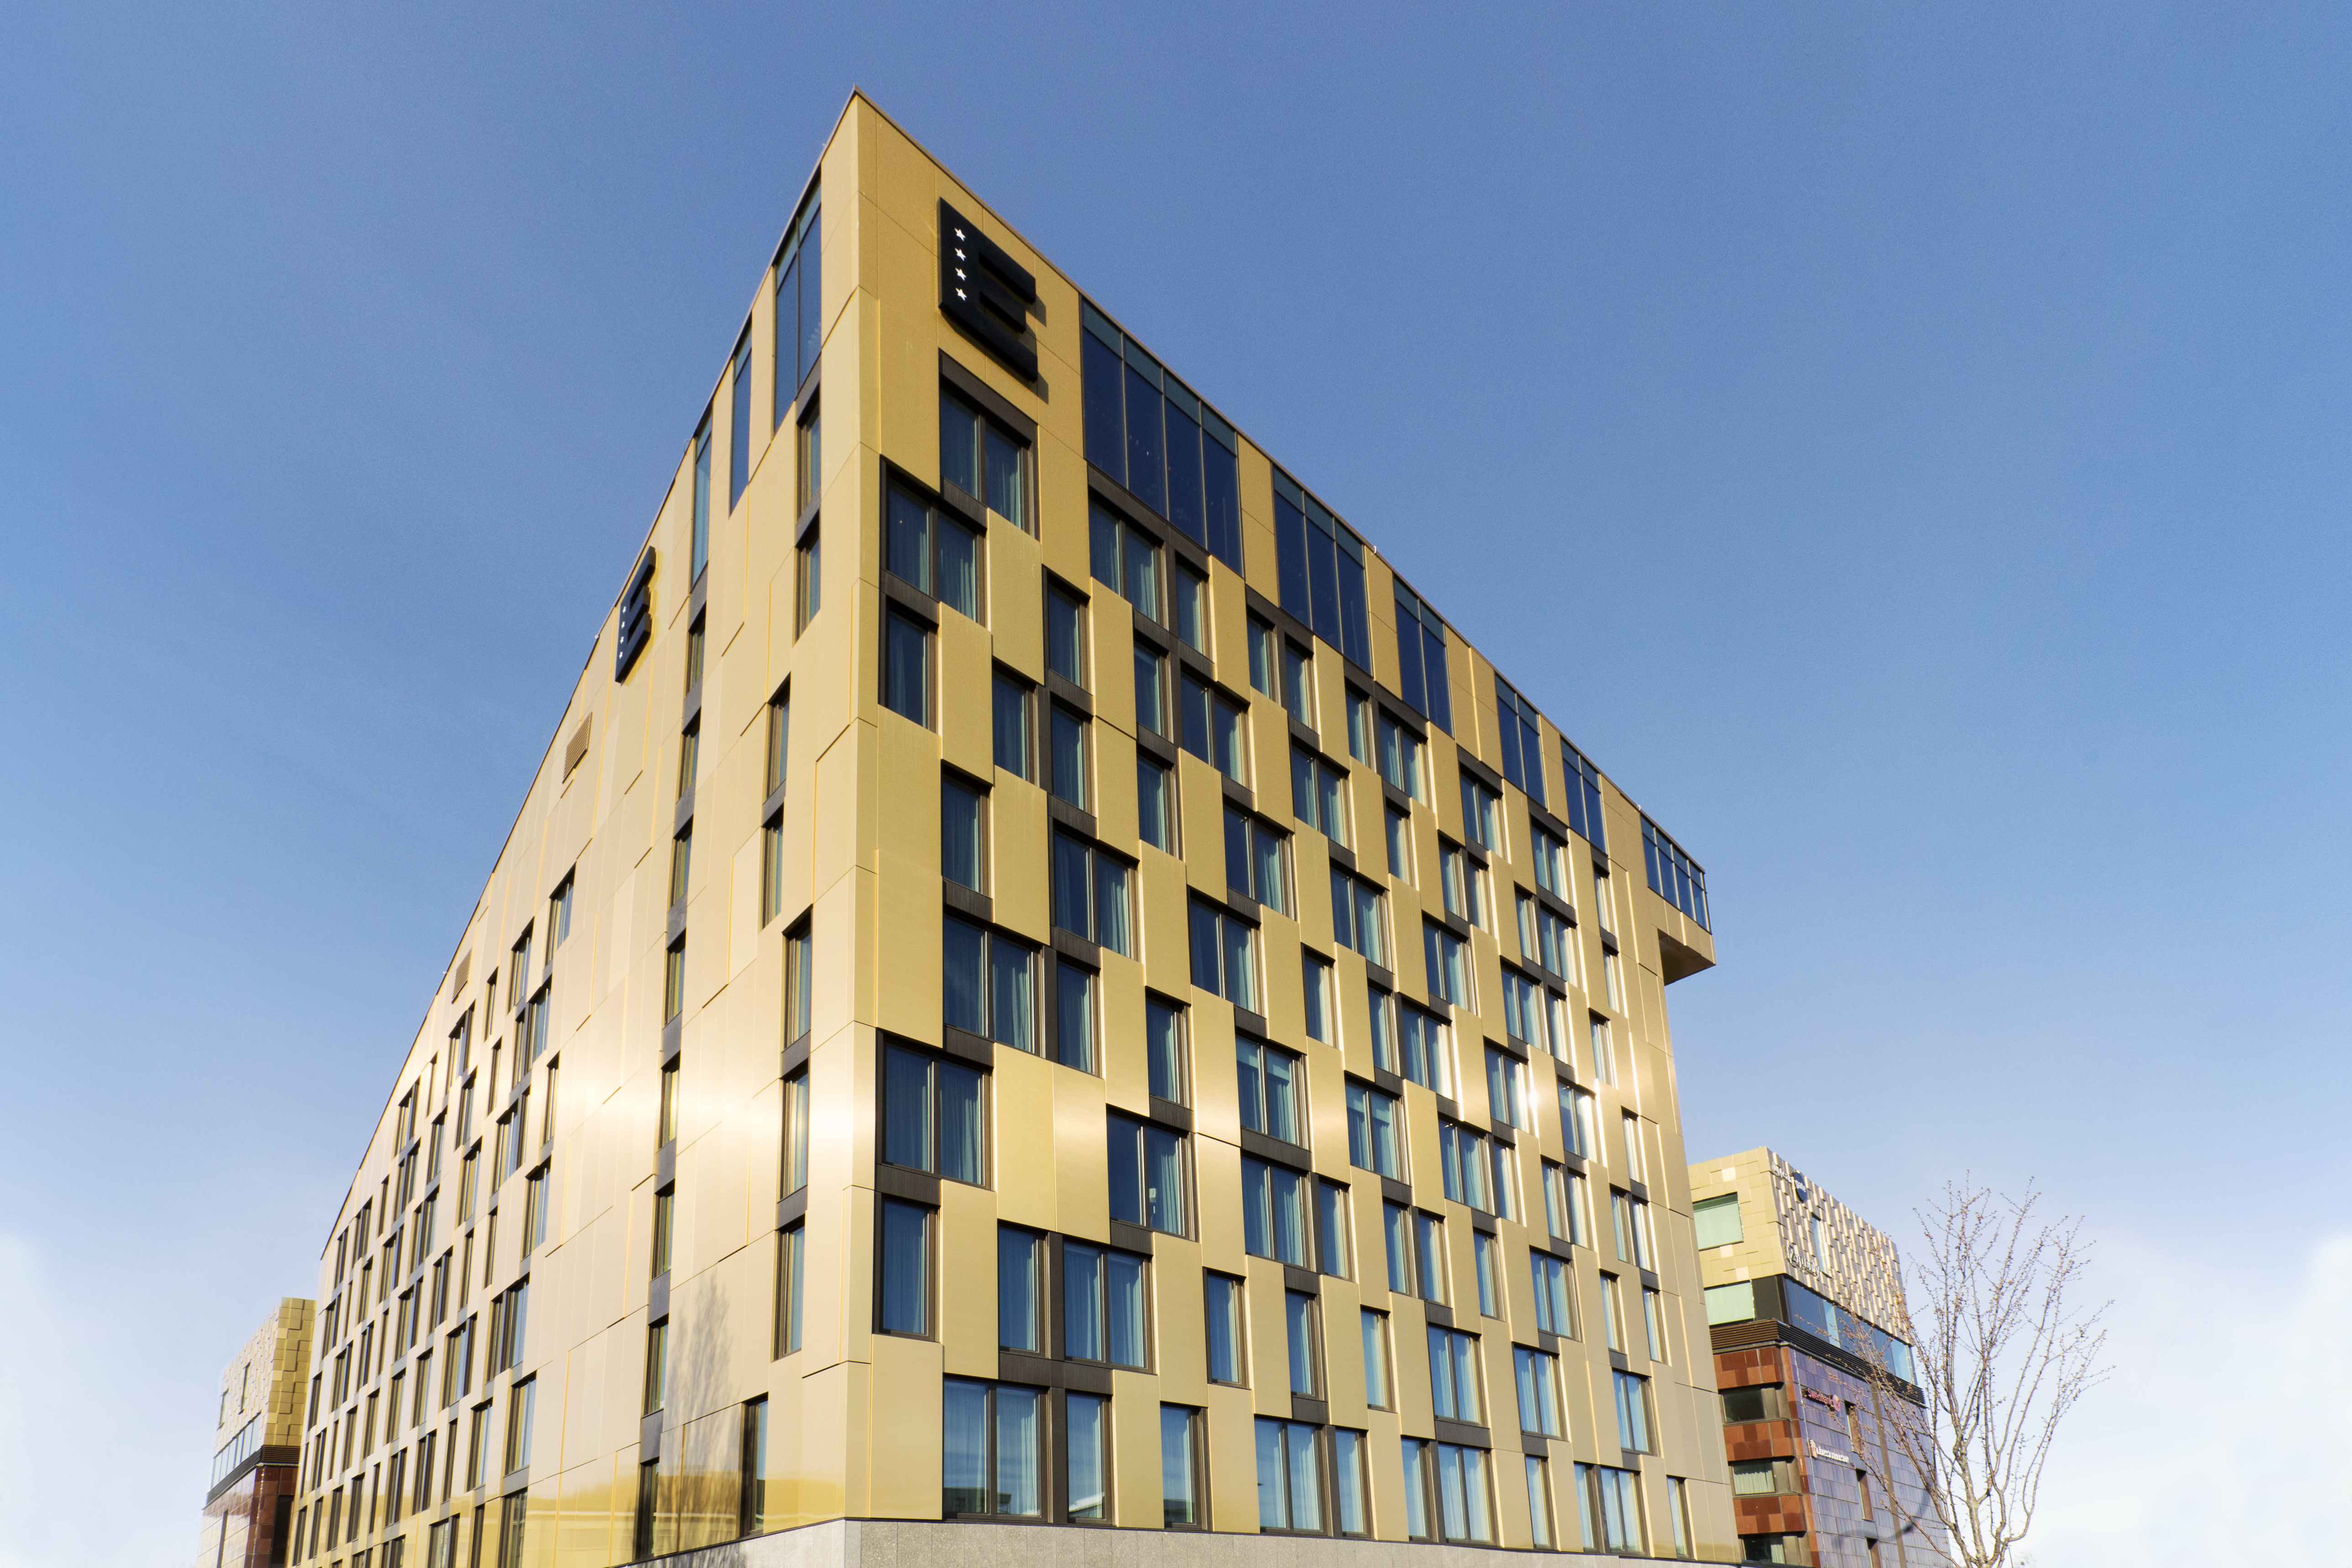 A building with a golden facade